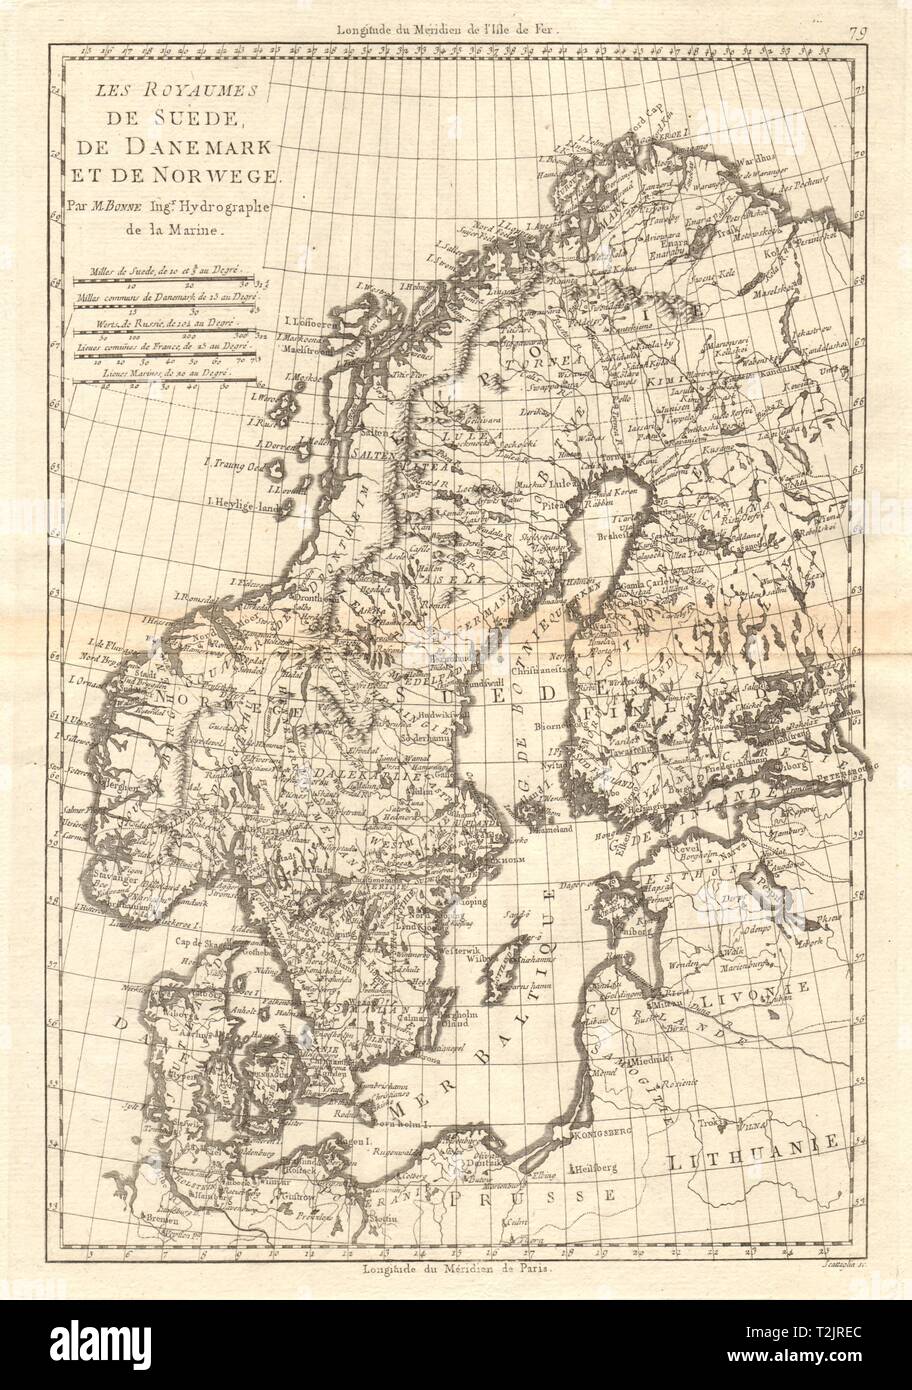 Les Royaumes de Suède, de Danemark et de Norwege. La Scandinavie. BONNE CARTE 1789 Banque D'Images